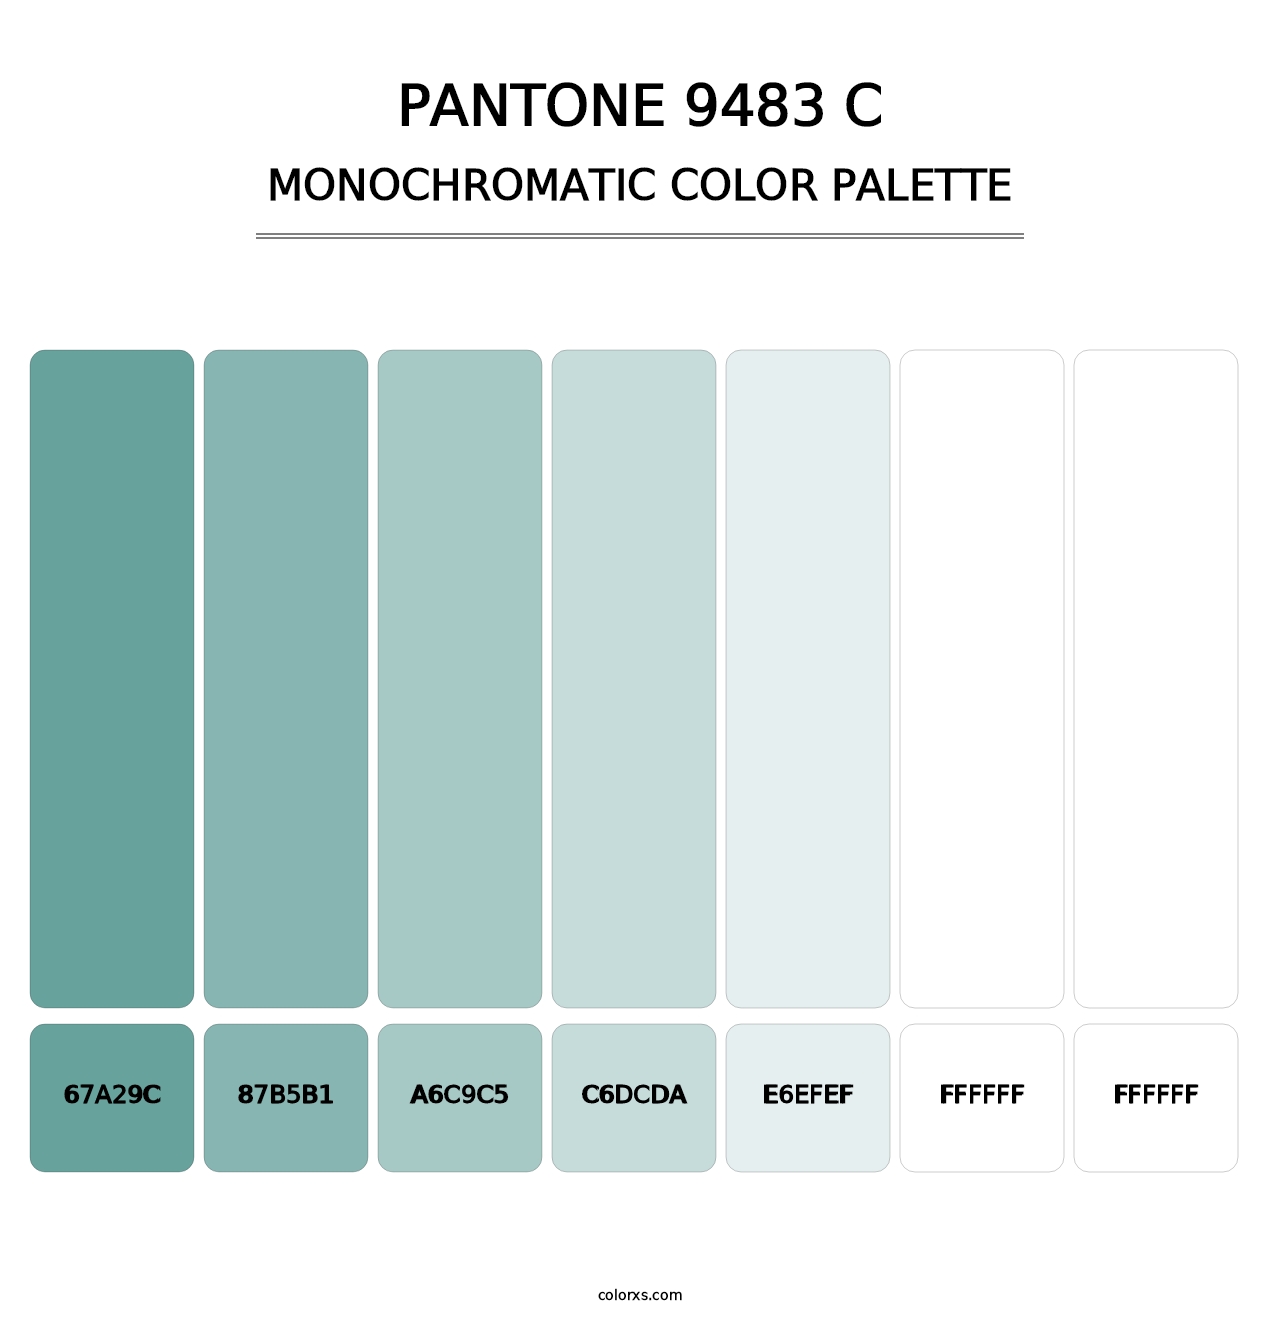 PANTONE 9483 C - Monochromatic Color Palette